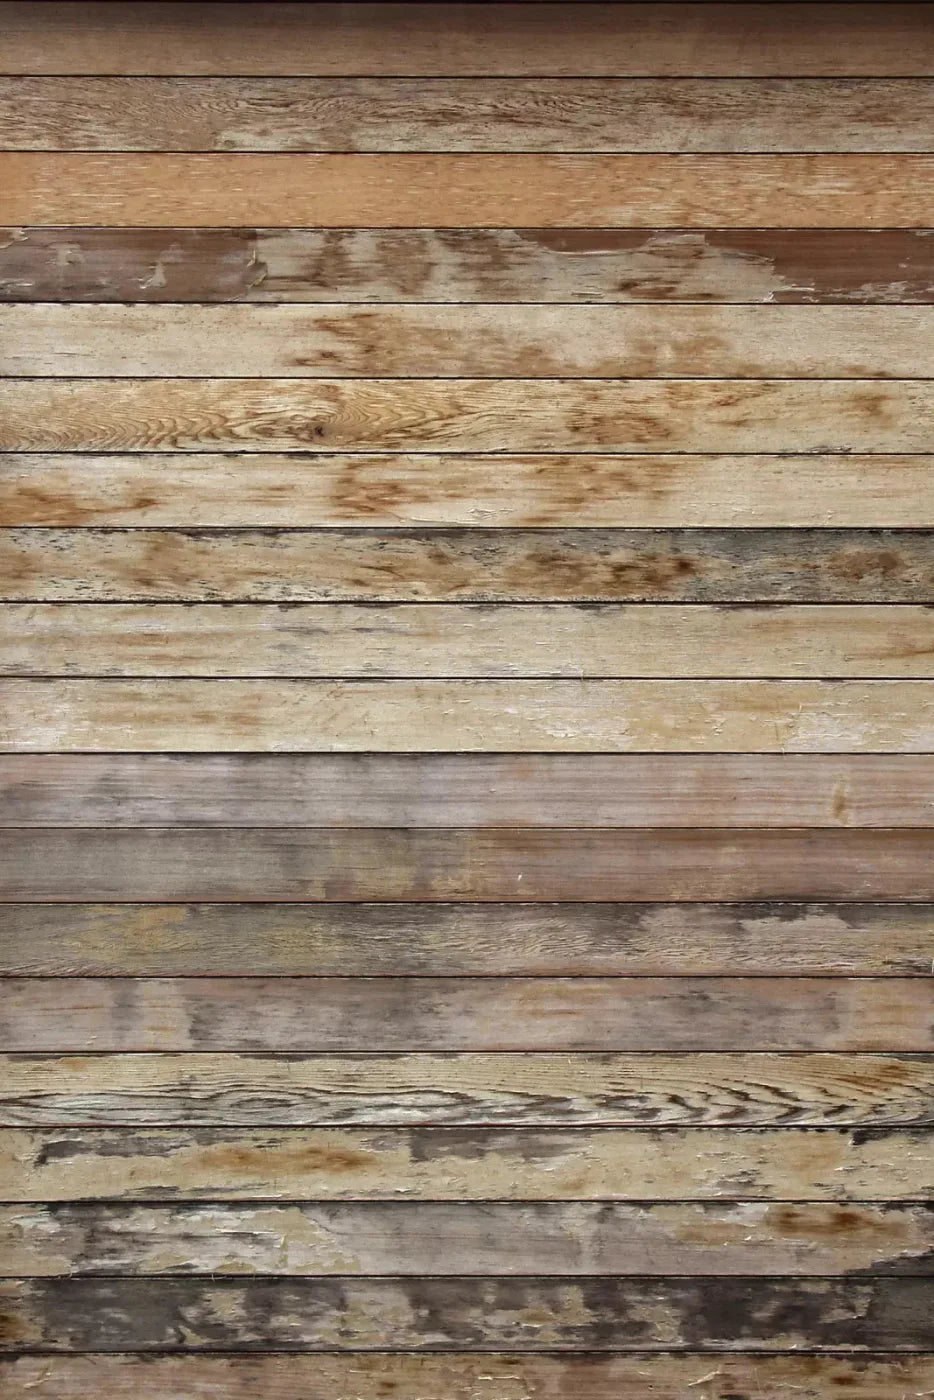 Board 4X5 Rubbermat Floor ( 48 X 60 Inch ) Backdrop